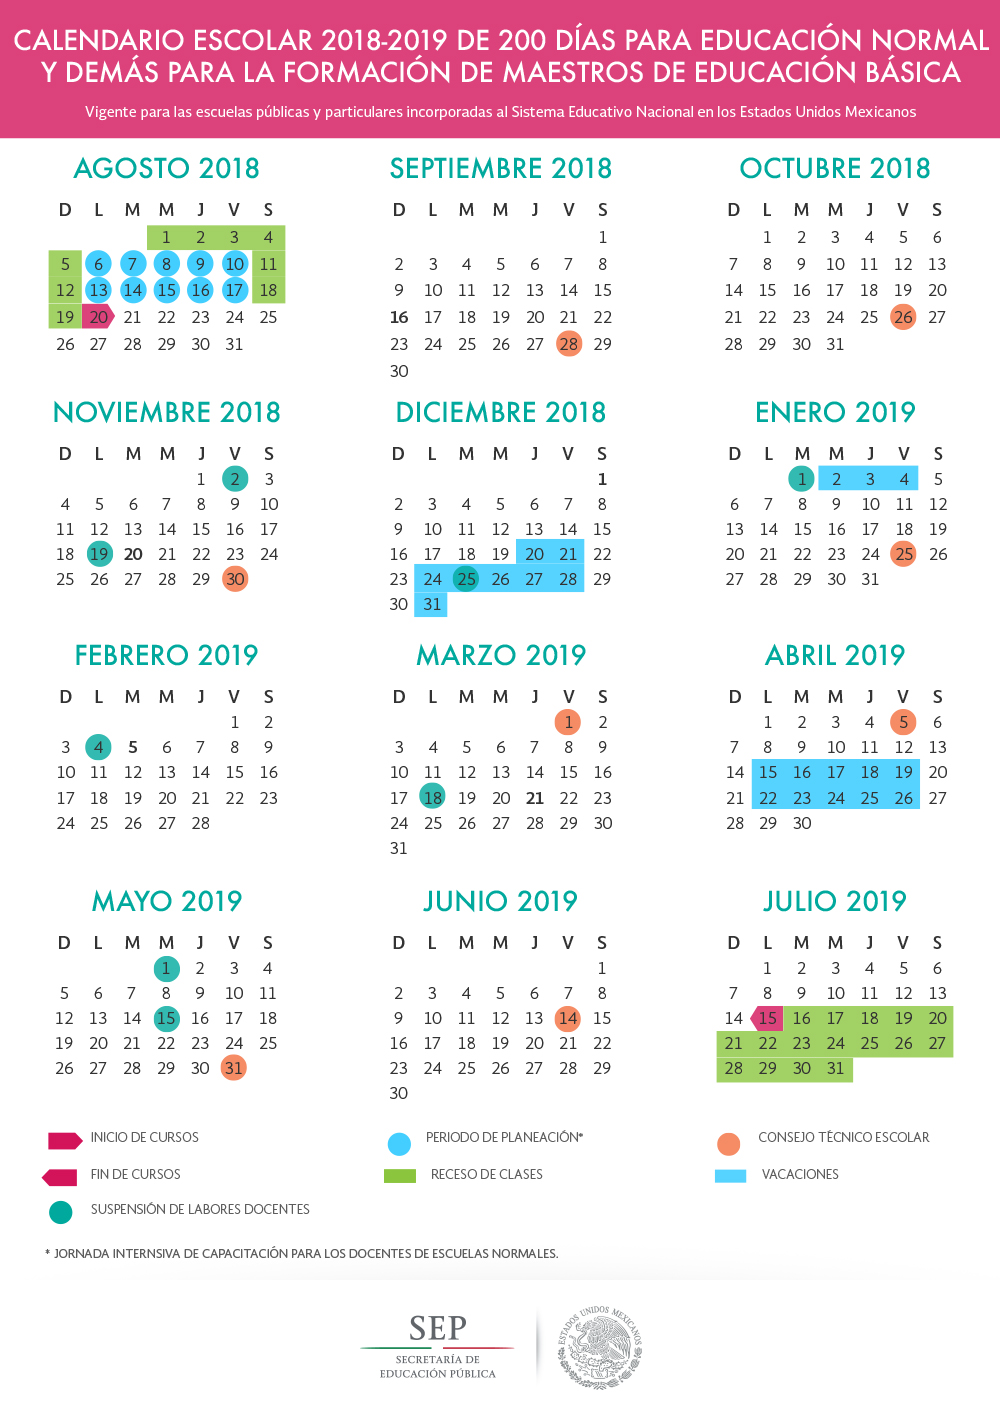 Calendario de 200 días para la Educación Normal